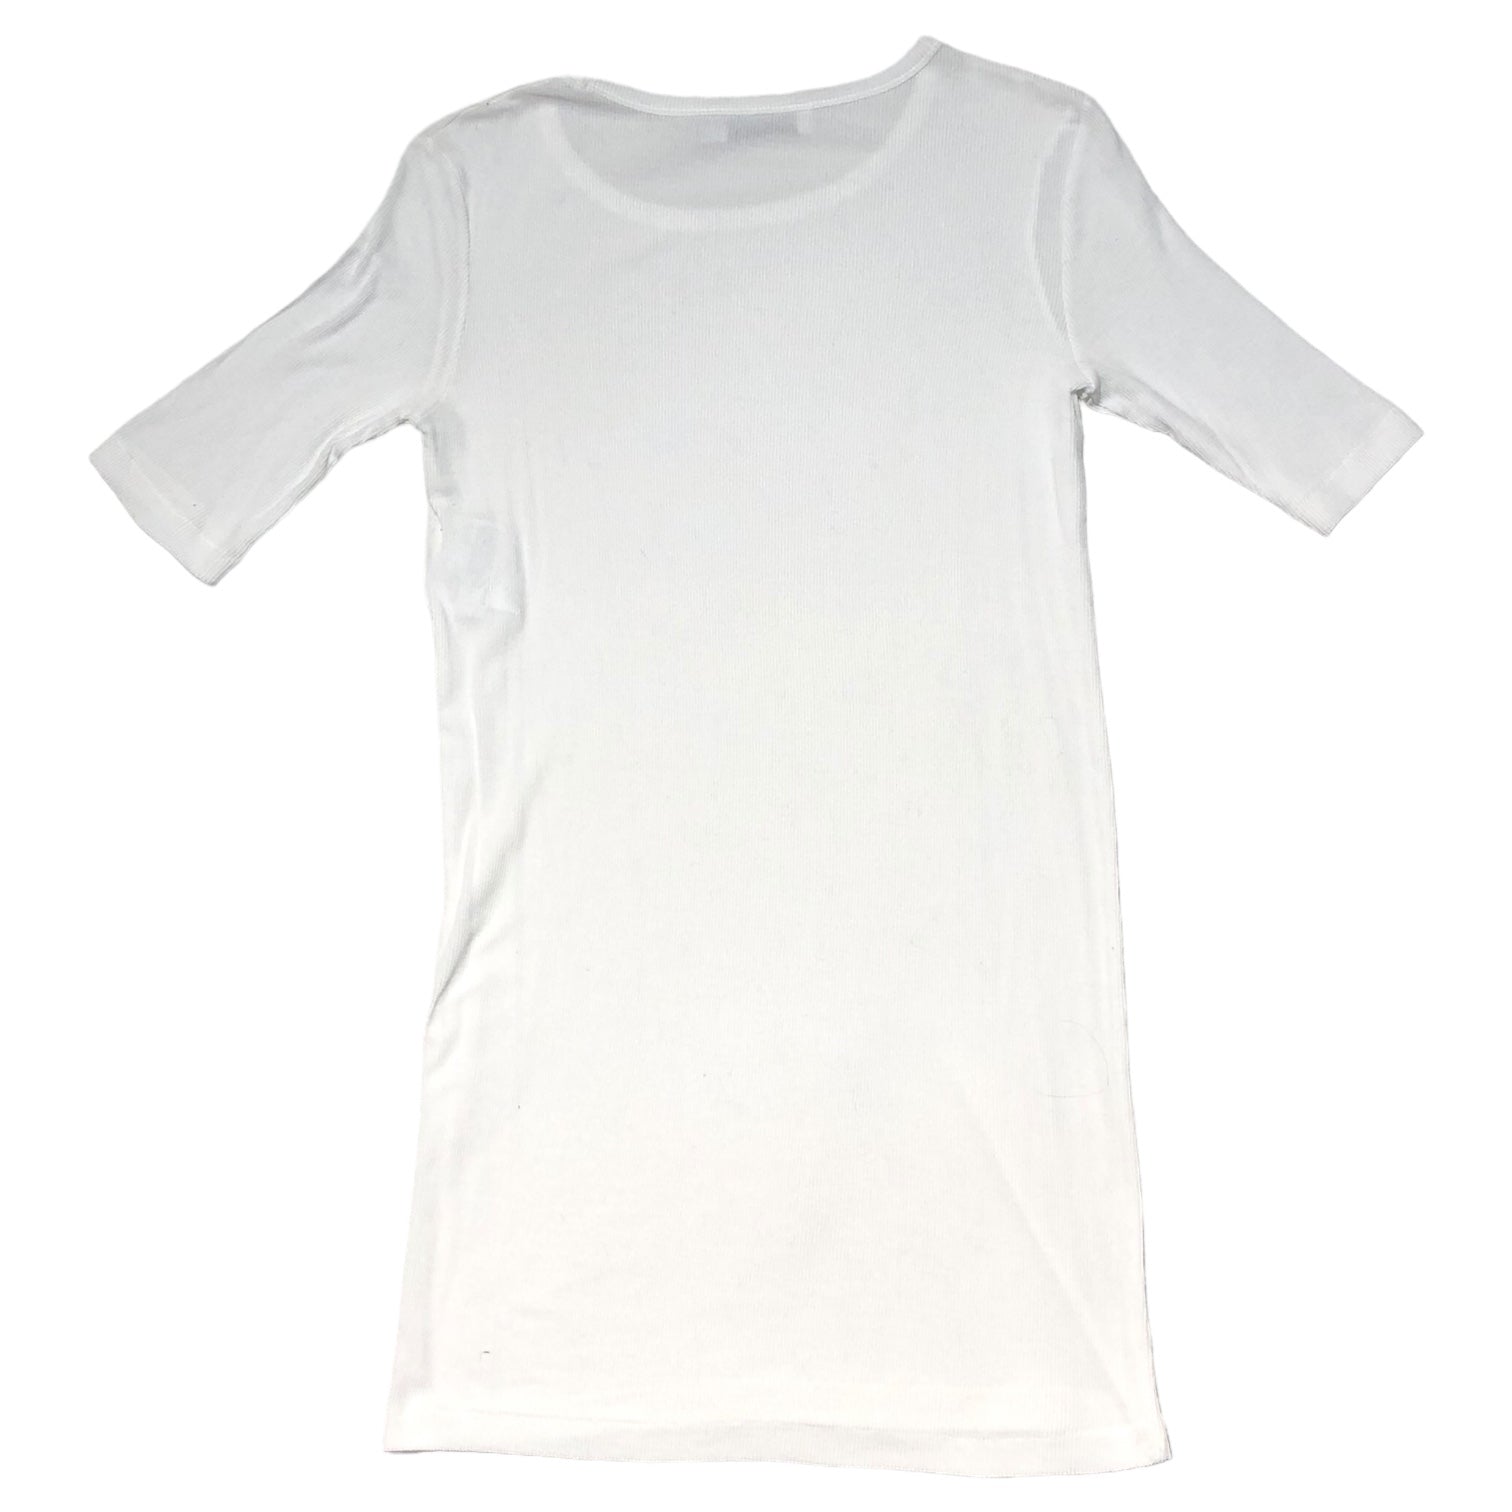 JIL SANDER(ジルサンダー) 11SS Cotton rib cut and sew コットン リブ カットソー 20111W00193 S ホワイト ラフシモンズ期 Tシャツ